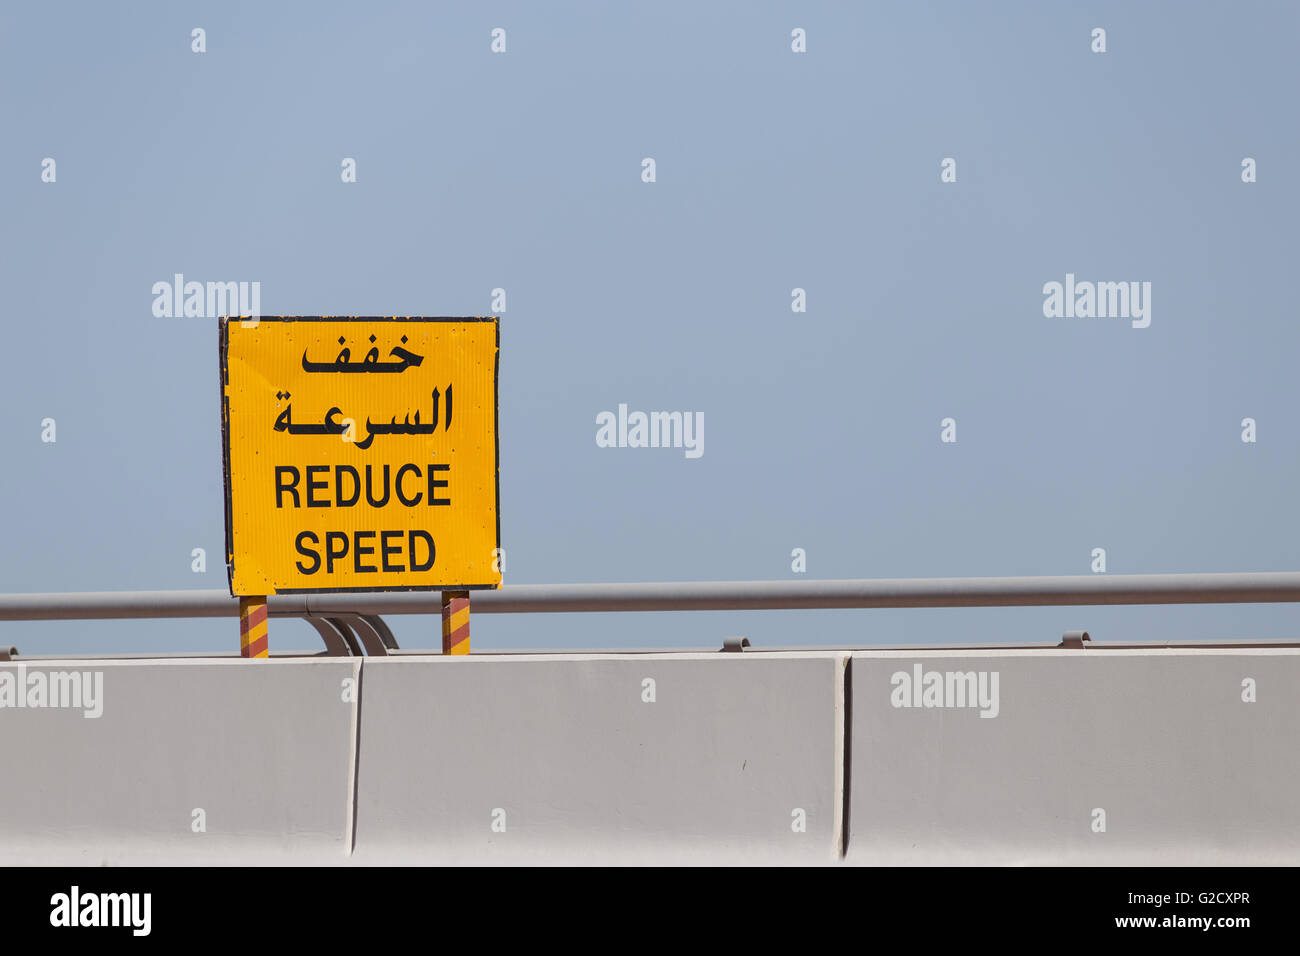 Verkehrszeichen: Geschwindigkeit verringern, auf Englisch und Arabisch Stockfoto